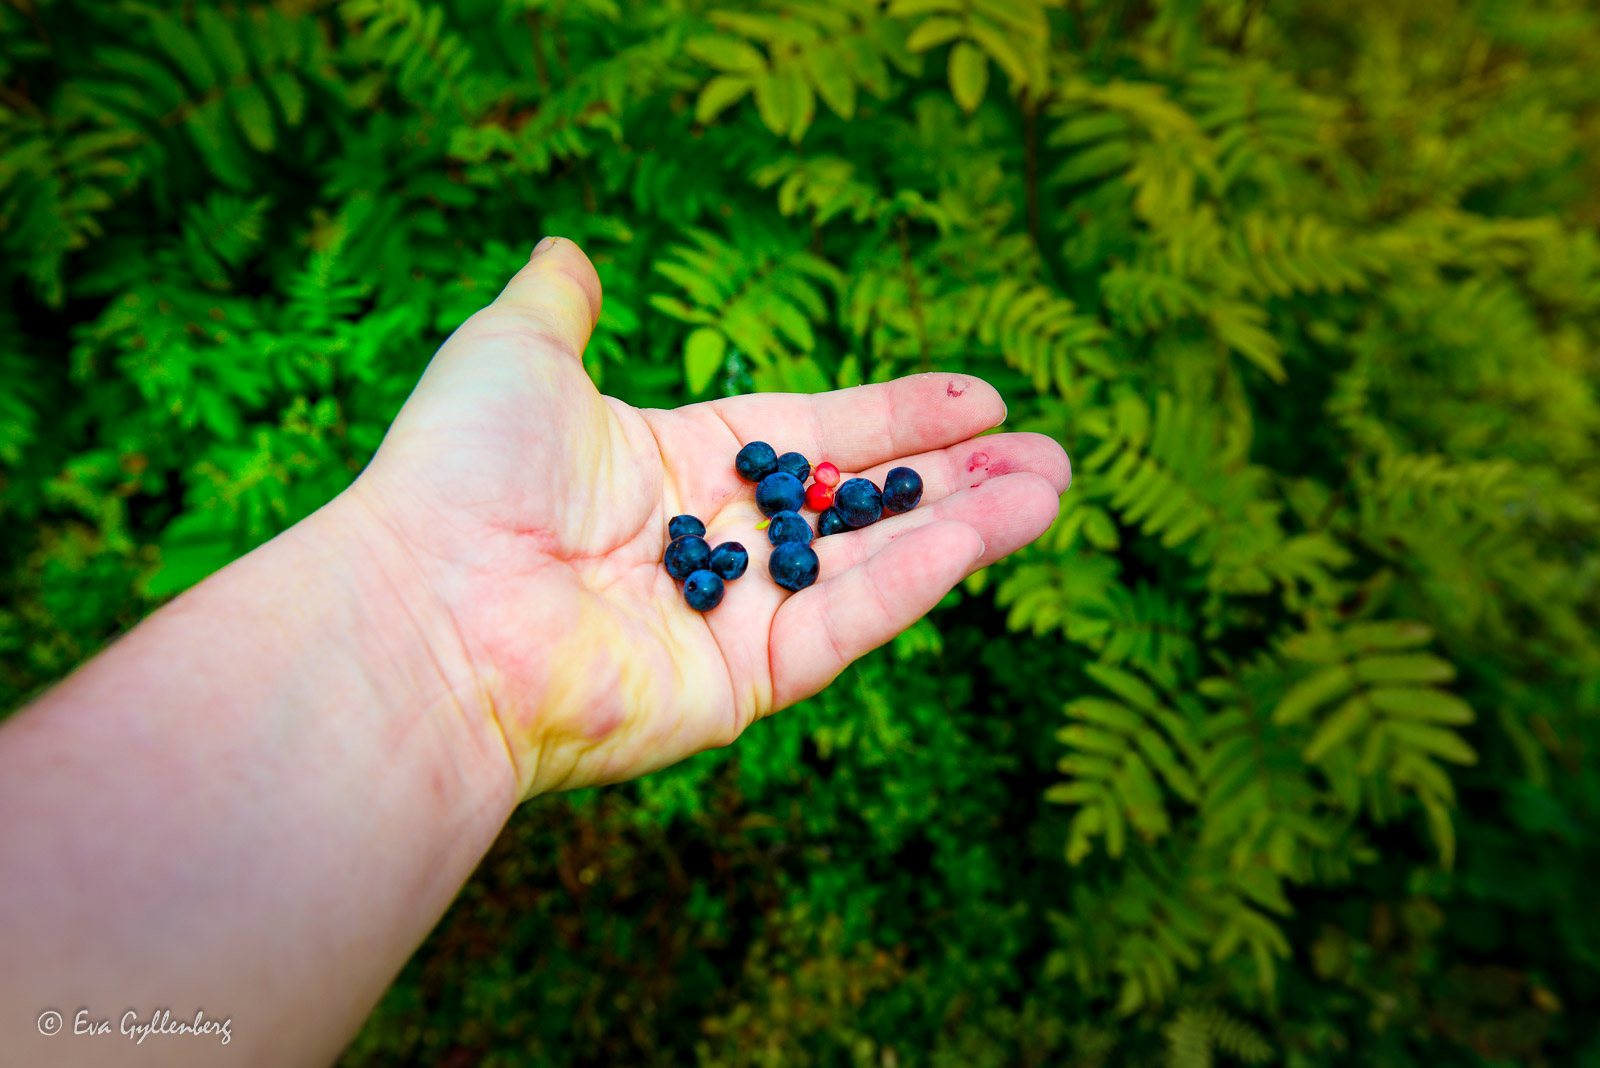 Blueberries always taste good when hiking in Sweden